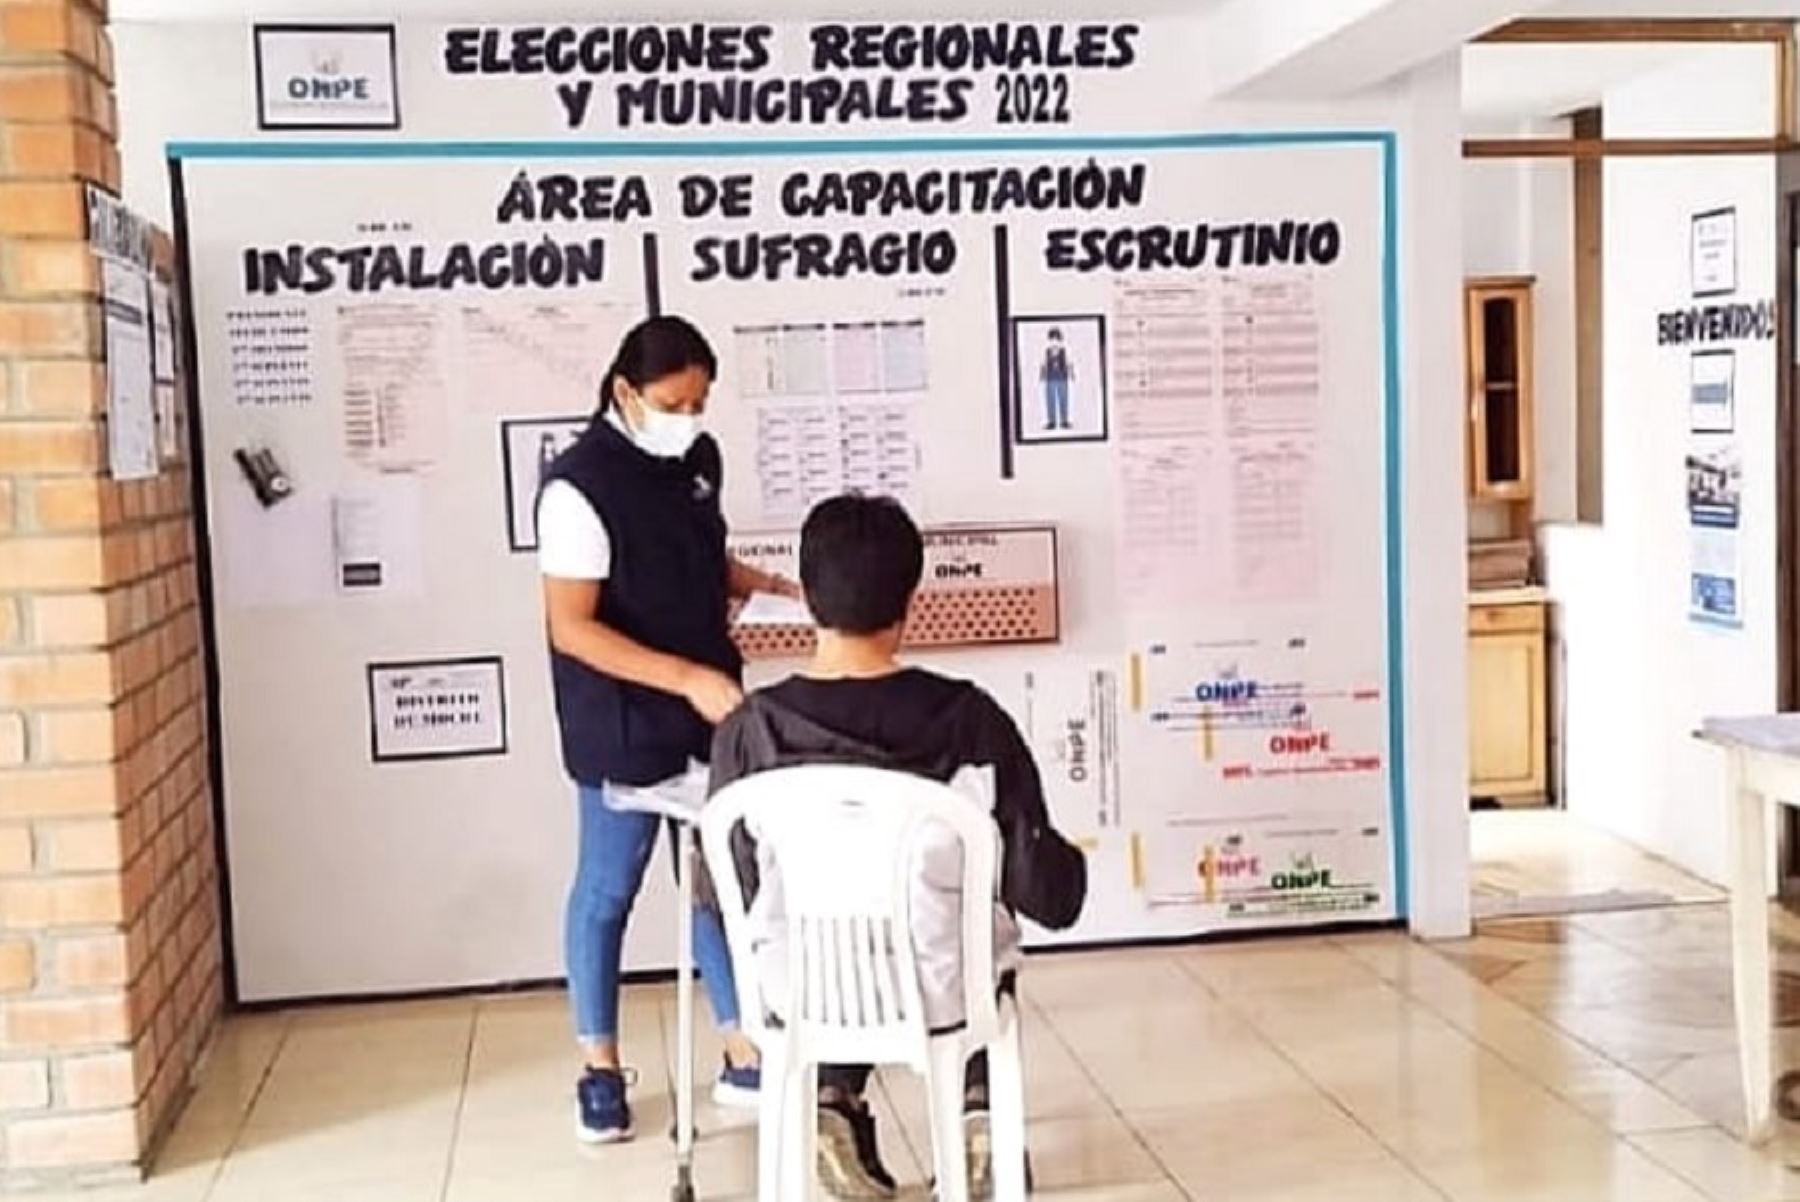 La Oficina de Procesos Electorales (ODPE) Trujillo capacitará a 19,554 miembros de mesa que participarán en las Elecciones Regionales y Municipales 2022 a realizarse el domingo 2 de octubre.